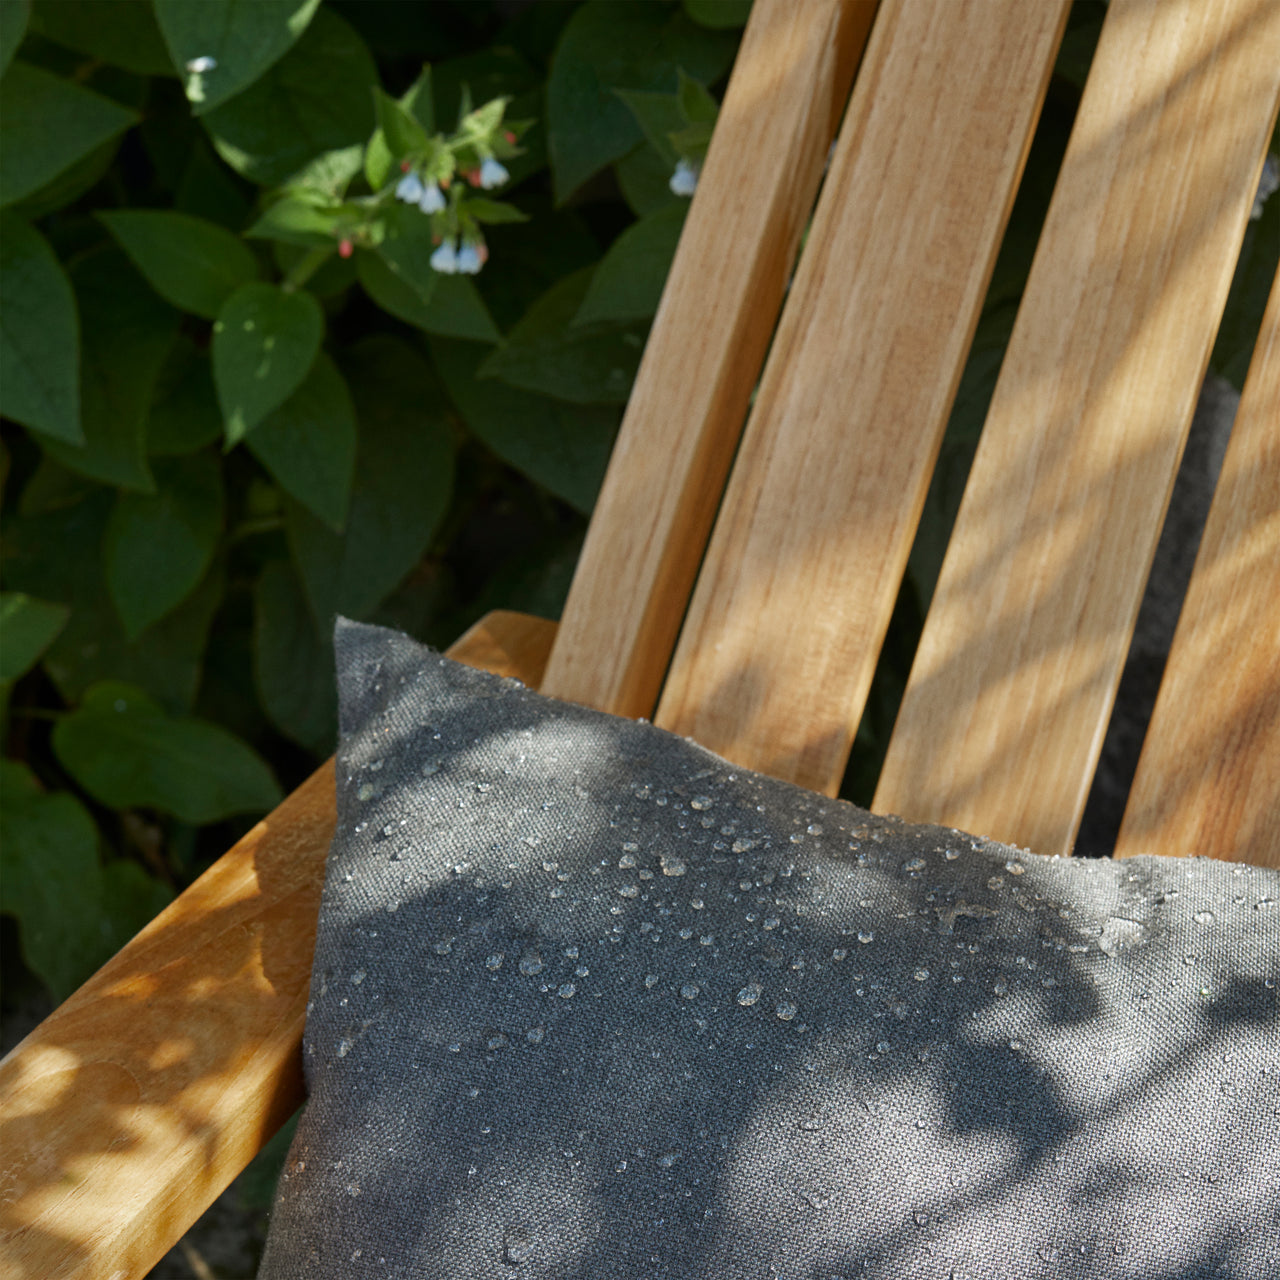 Between Lines Deck Chair: Outdoor